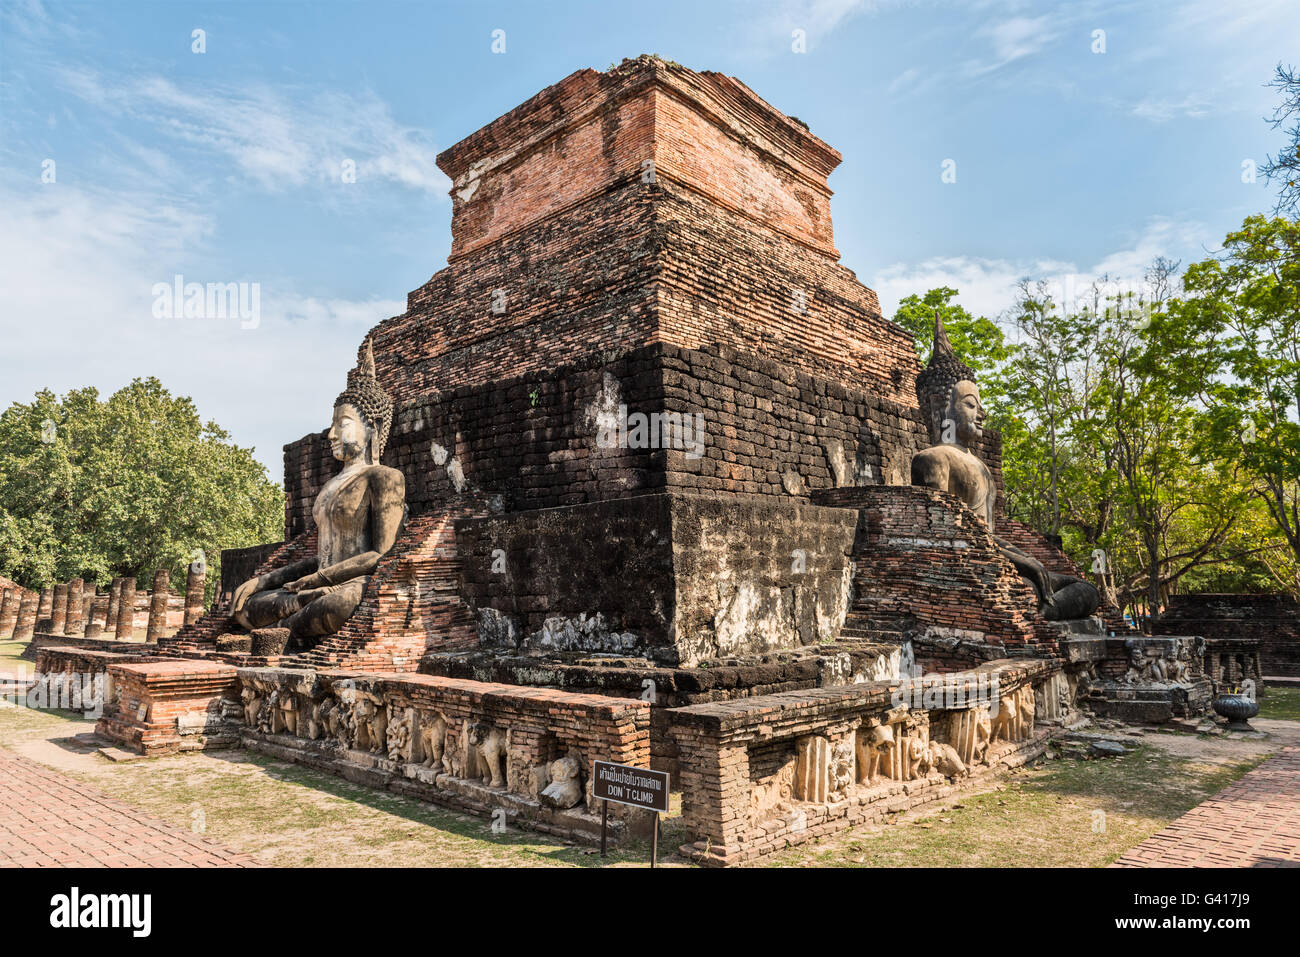 Ruines d'un temple avec des statues de Bouddha dans le parc historique de Sukhothai, Thaïlande Banque D'Images